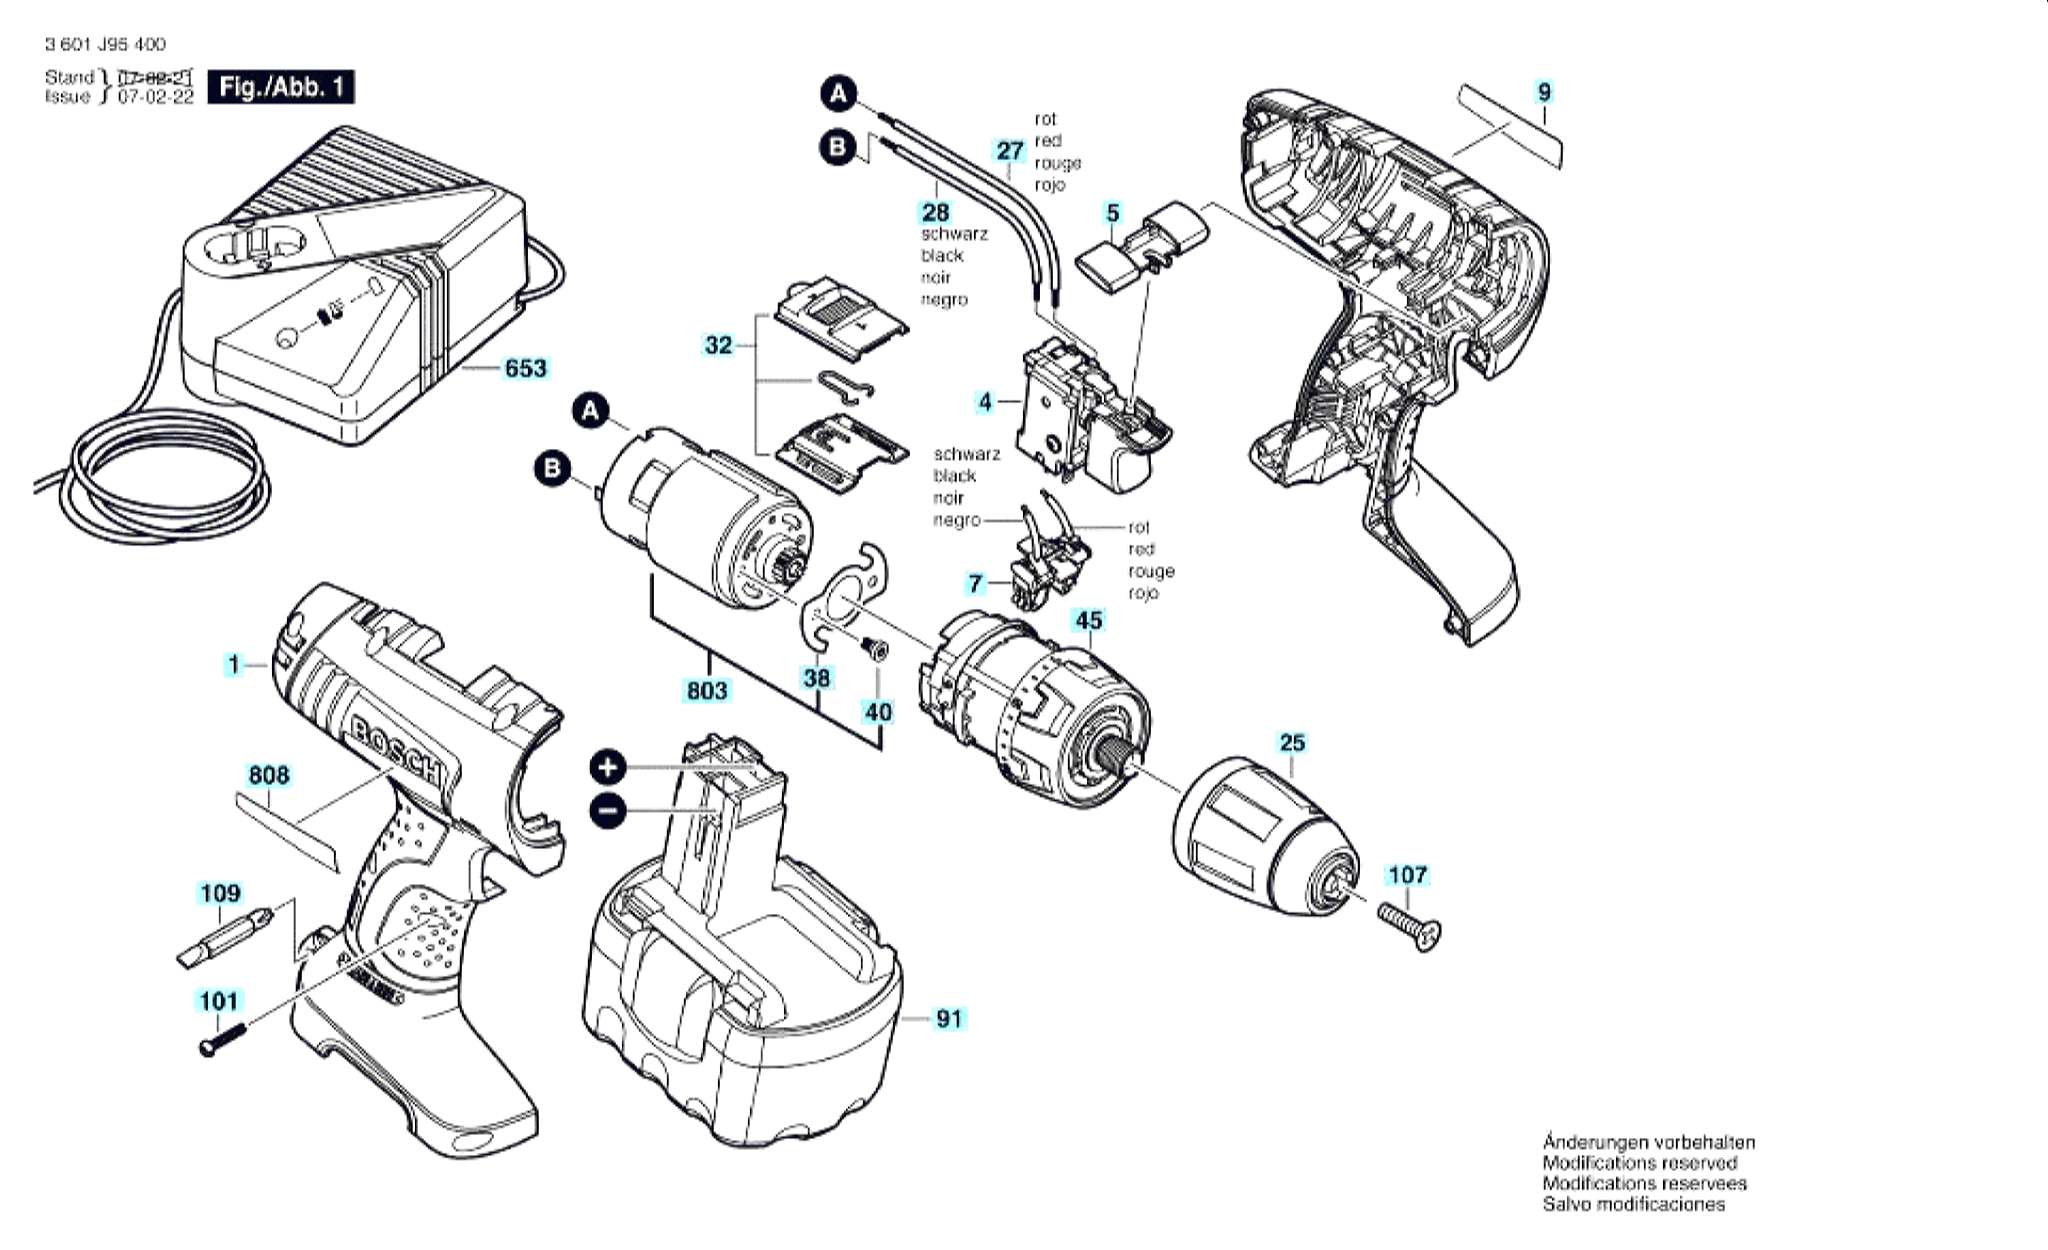 Запчасти, схема и деталировка Bosch GSR 14,4 V (ТИП 3601J95401)